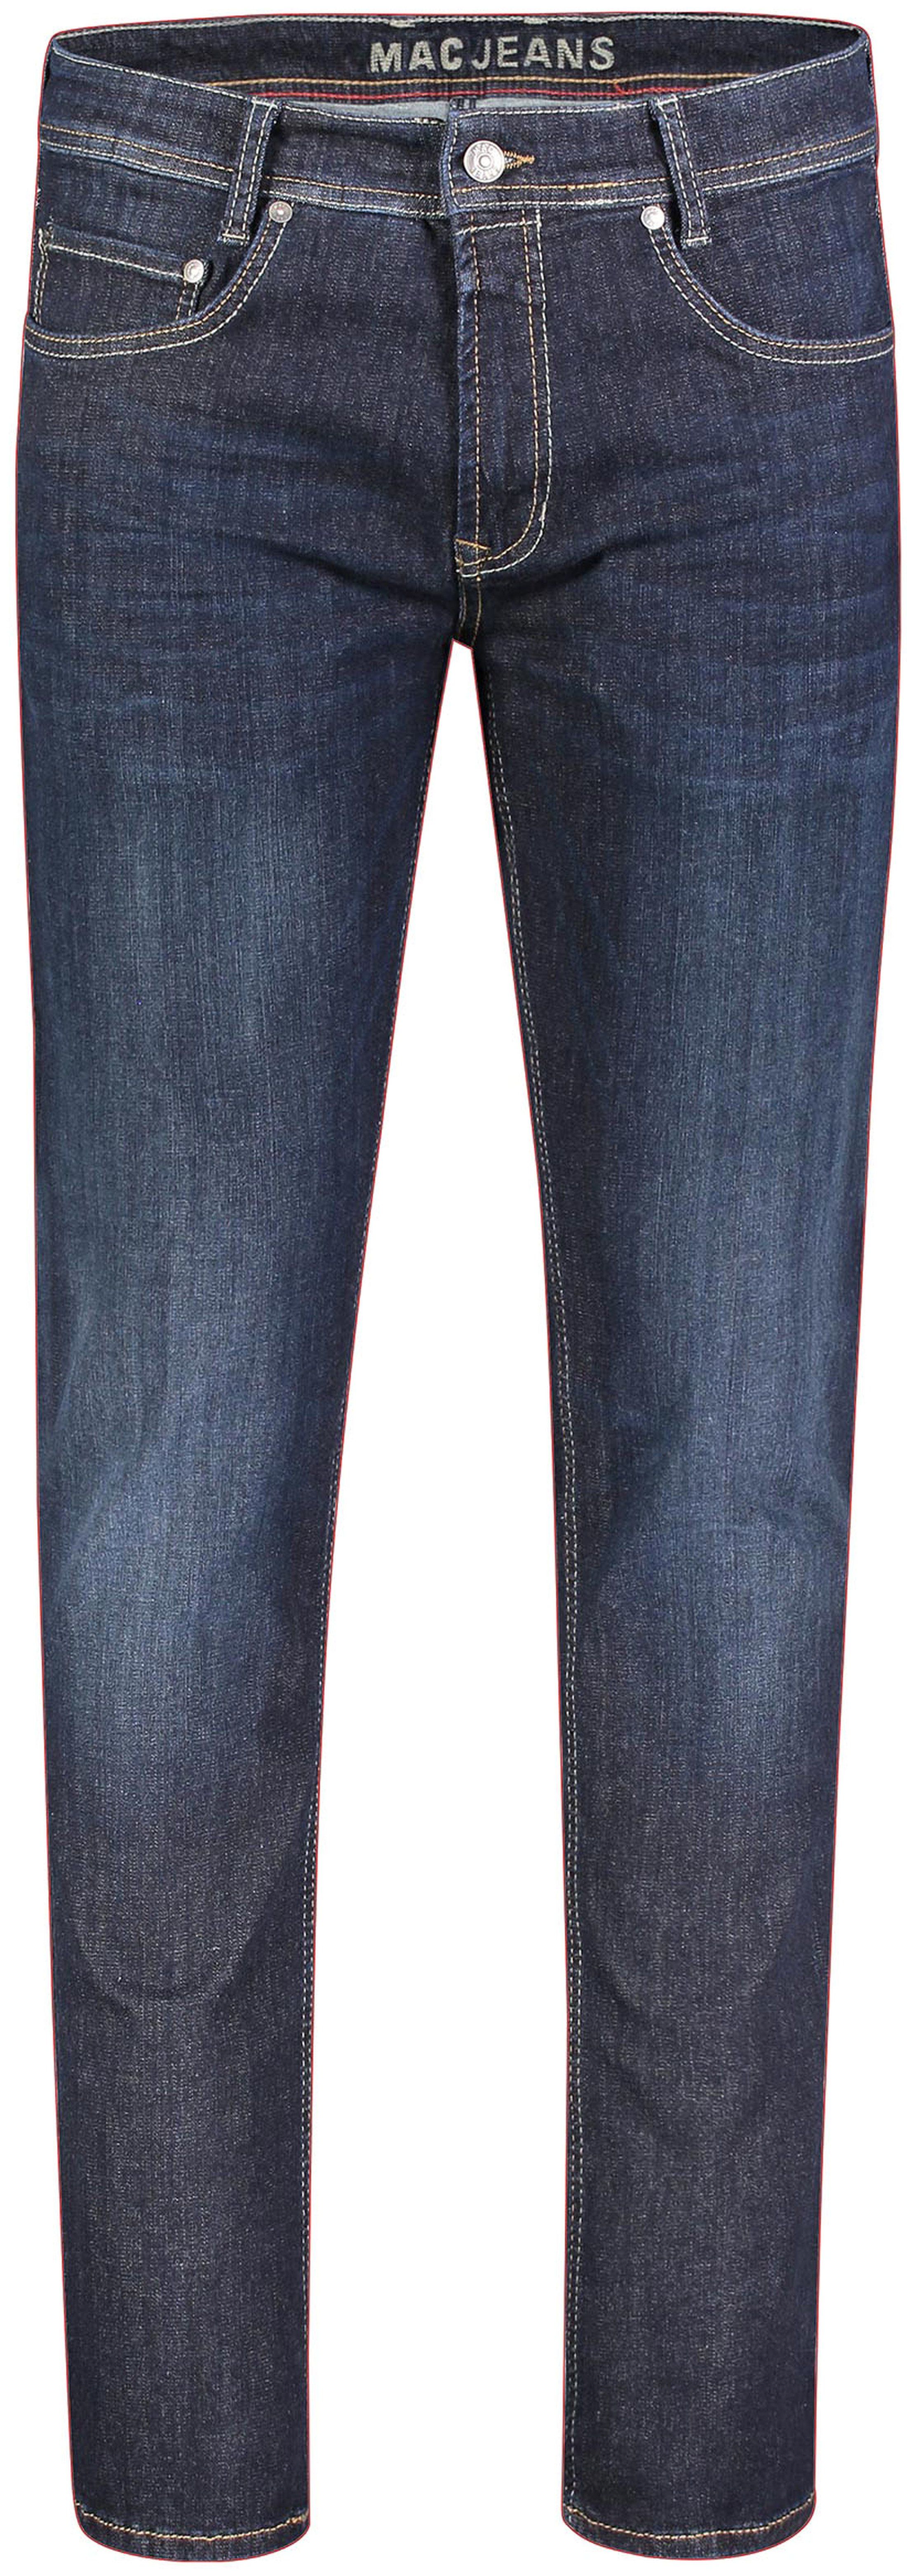 Mac Jeans Arne Pipe Flexx Superstretch H736 Blue size W 30